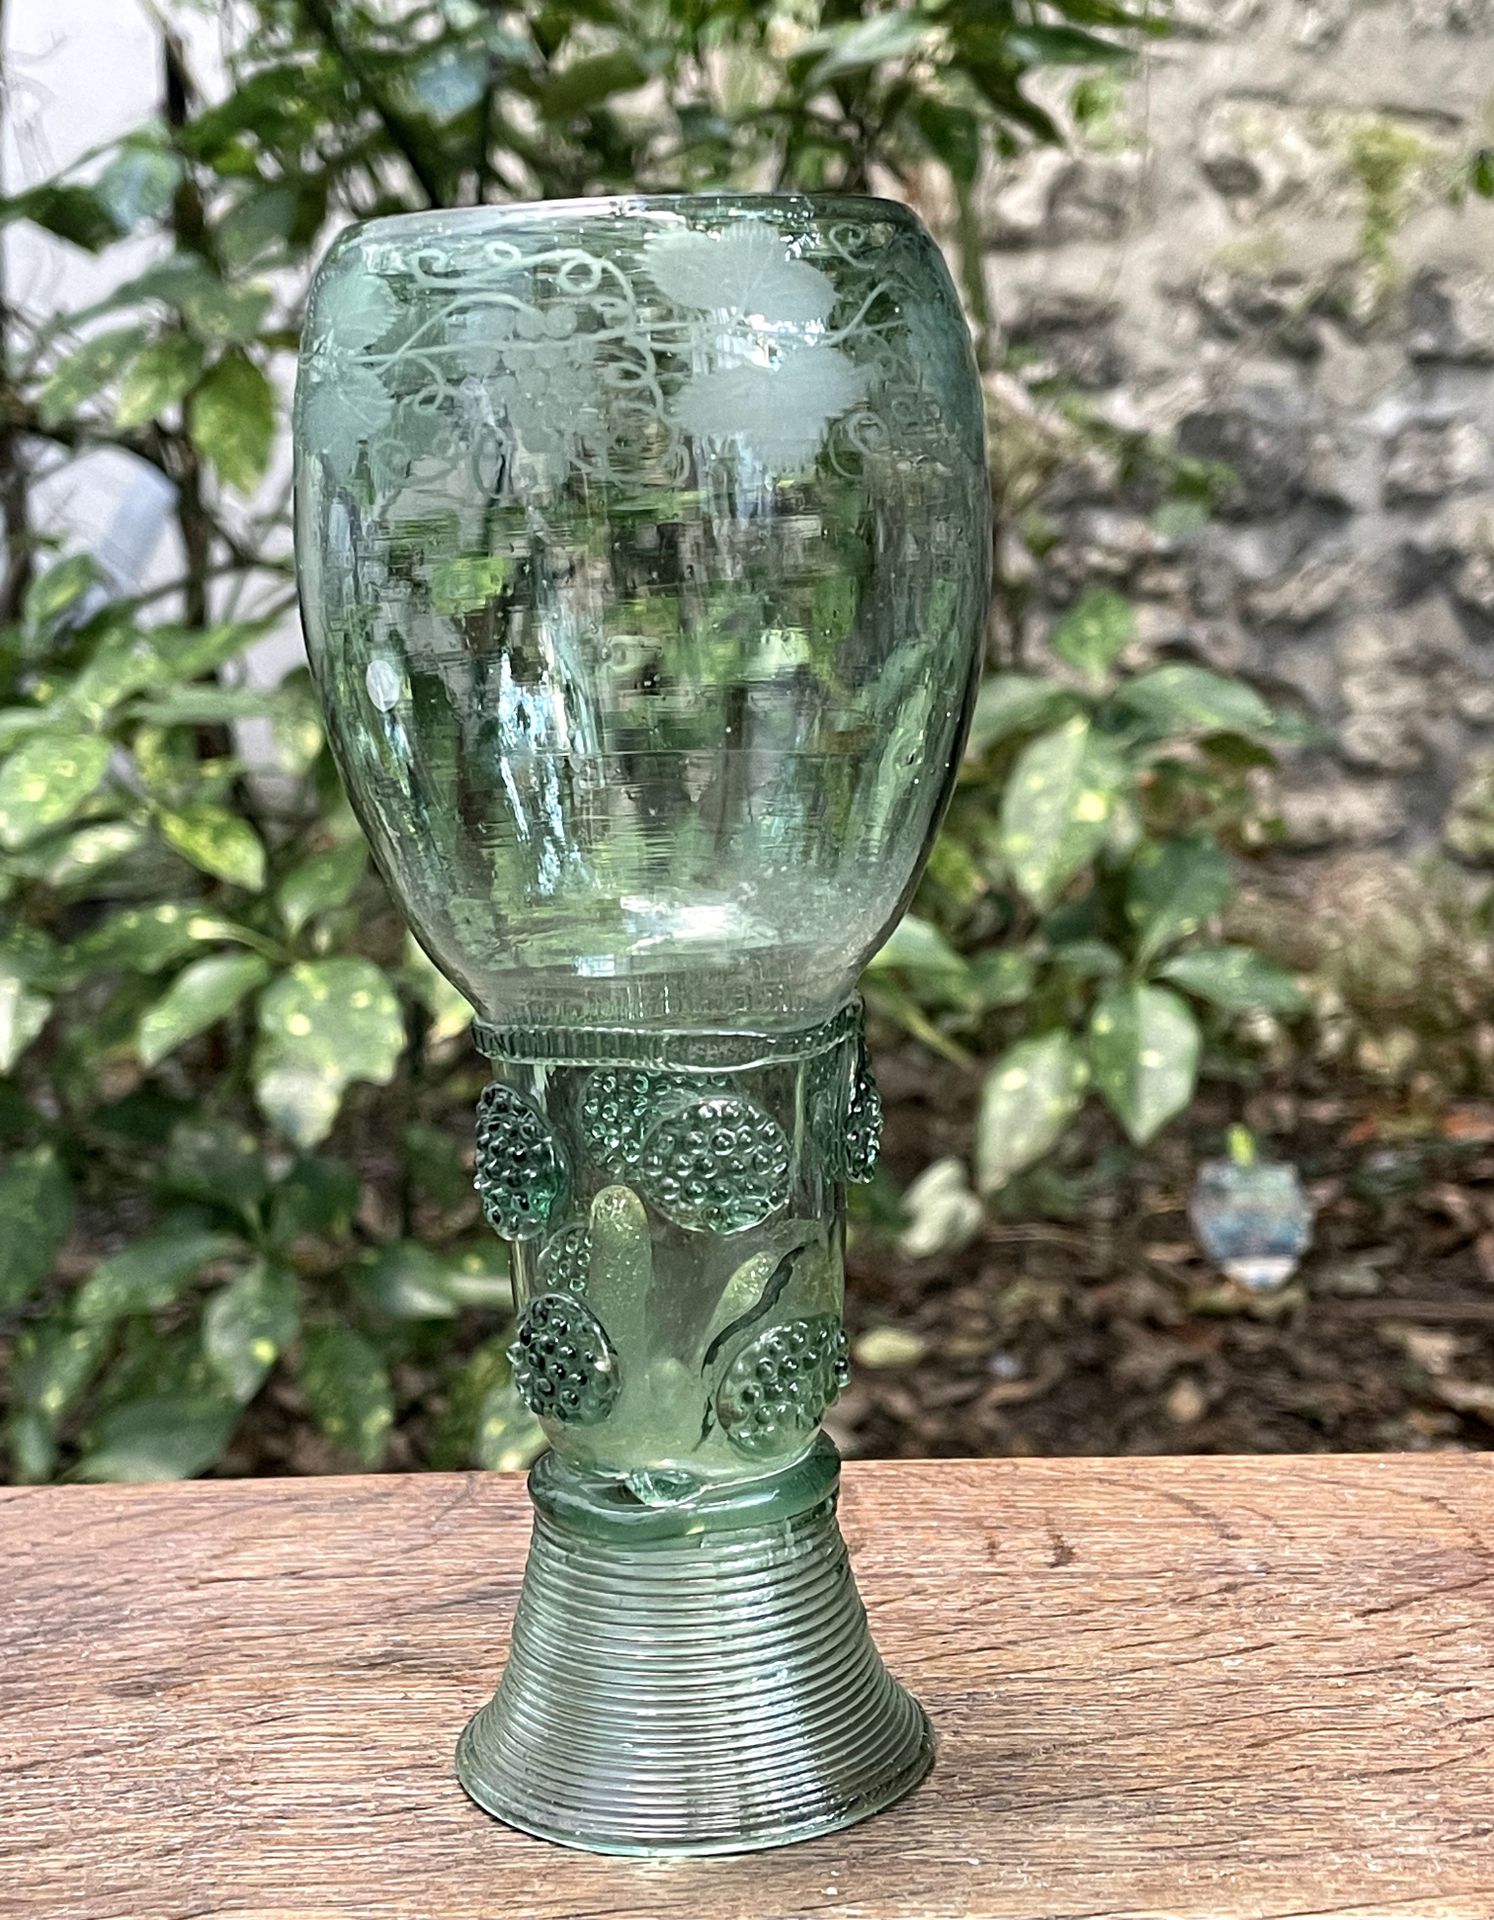 Null Römer de vidrio verde con uvas grabadas y motivos aplicados.

Siglo XIX

H.&hellip;